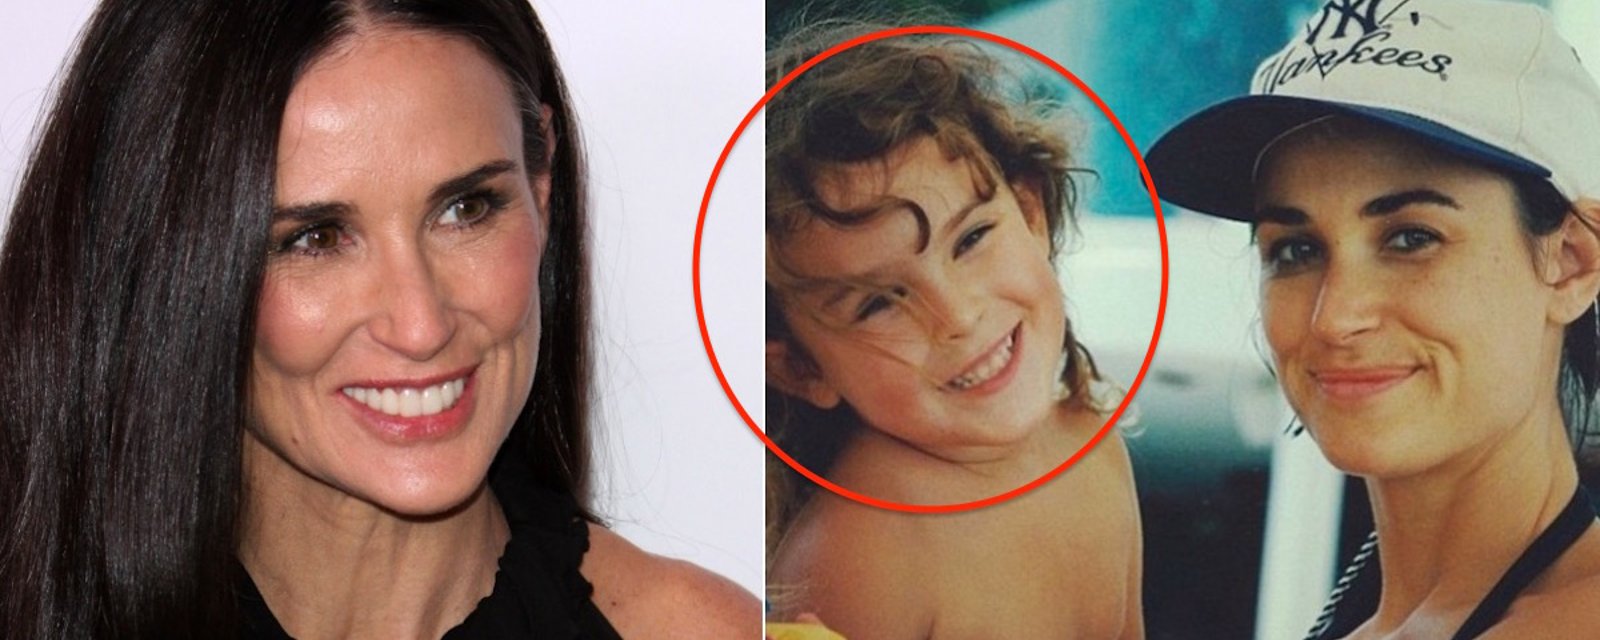 La fille de Demi Moore a vieilli... Elle ressemble à sa mère comme deux gouttes d'eau! 